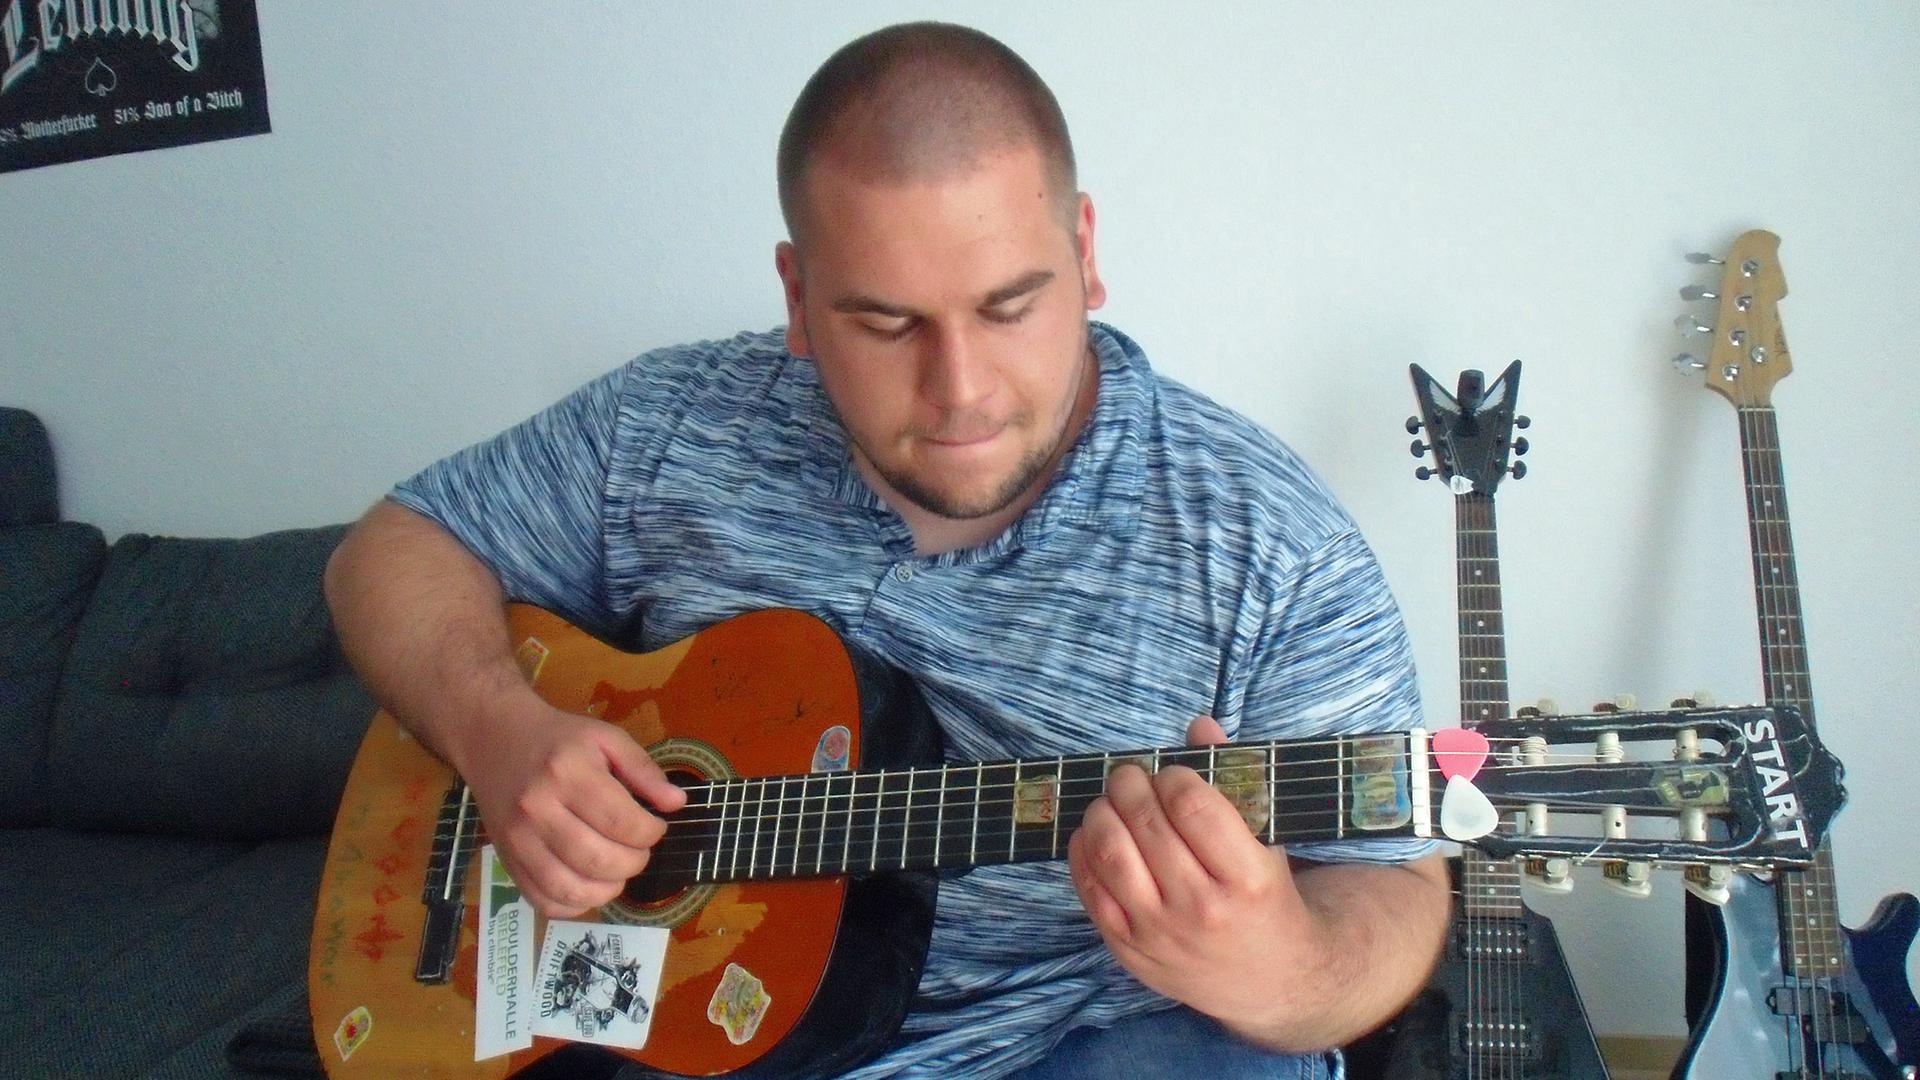 Ein junger Mann mit rasiertem Kopf spielt auf einer seiner Gitarren - weitere Instrumente sind im Hintergrund zu sehen